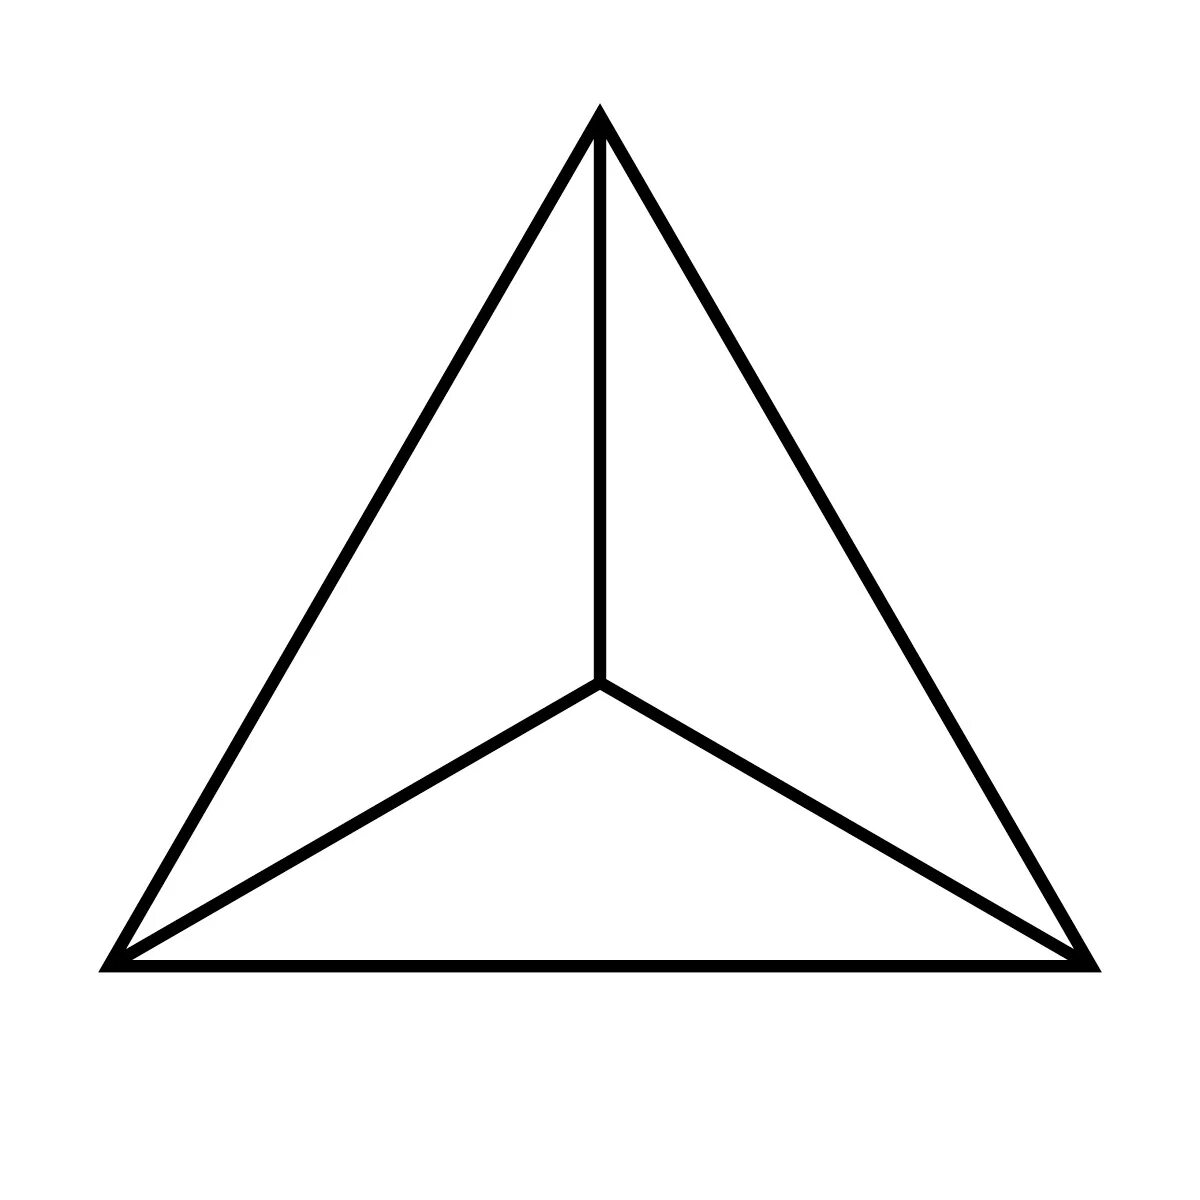 Внимание наподобие фигур. Треугольник. Треугольные фигуры. Иконка треугольник. Треугольная пирамида с равносторонним треугольником.